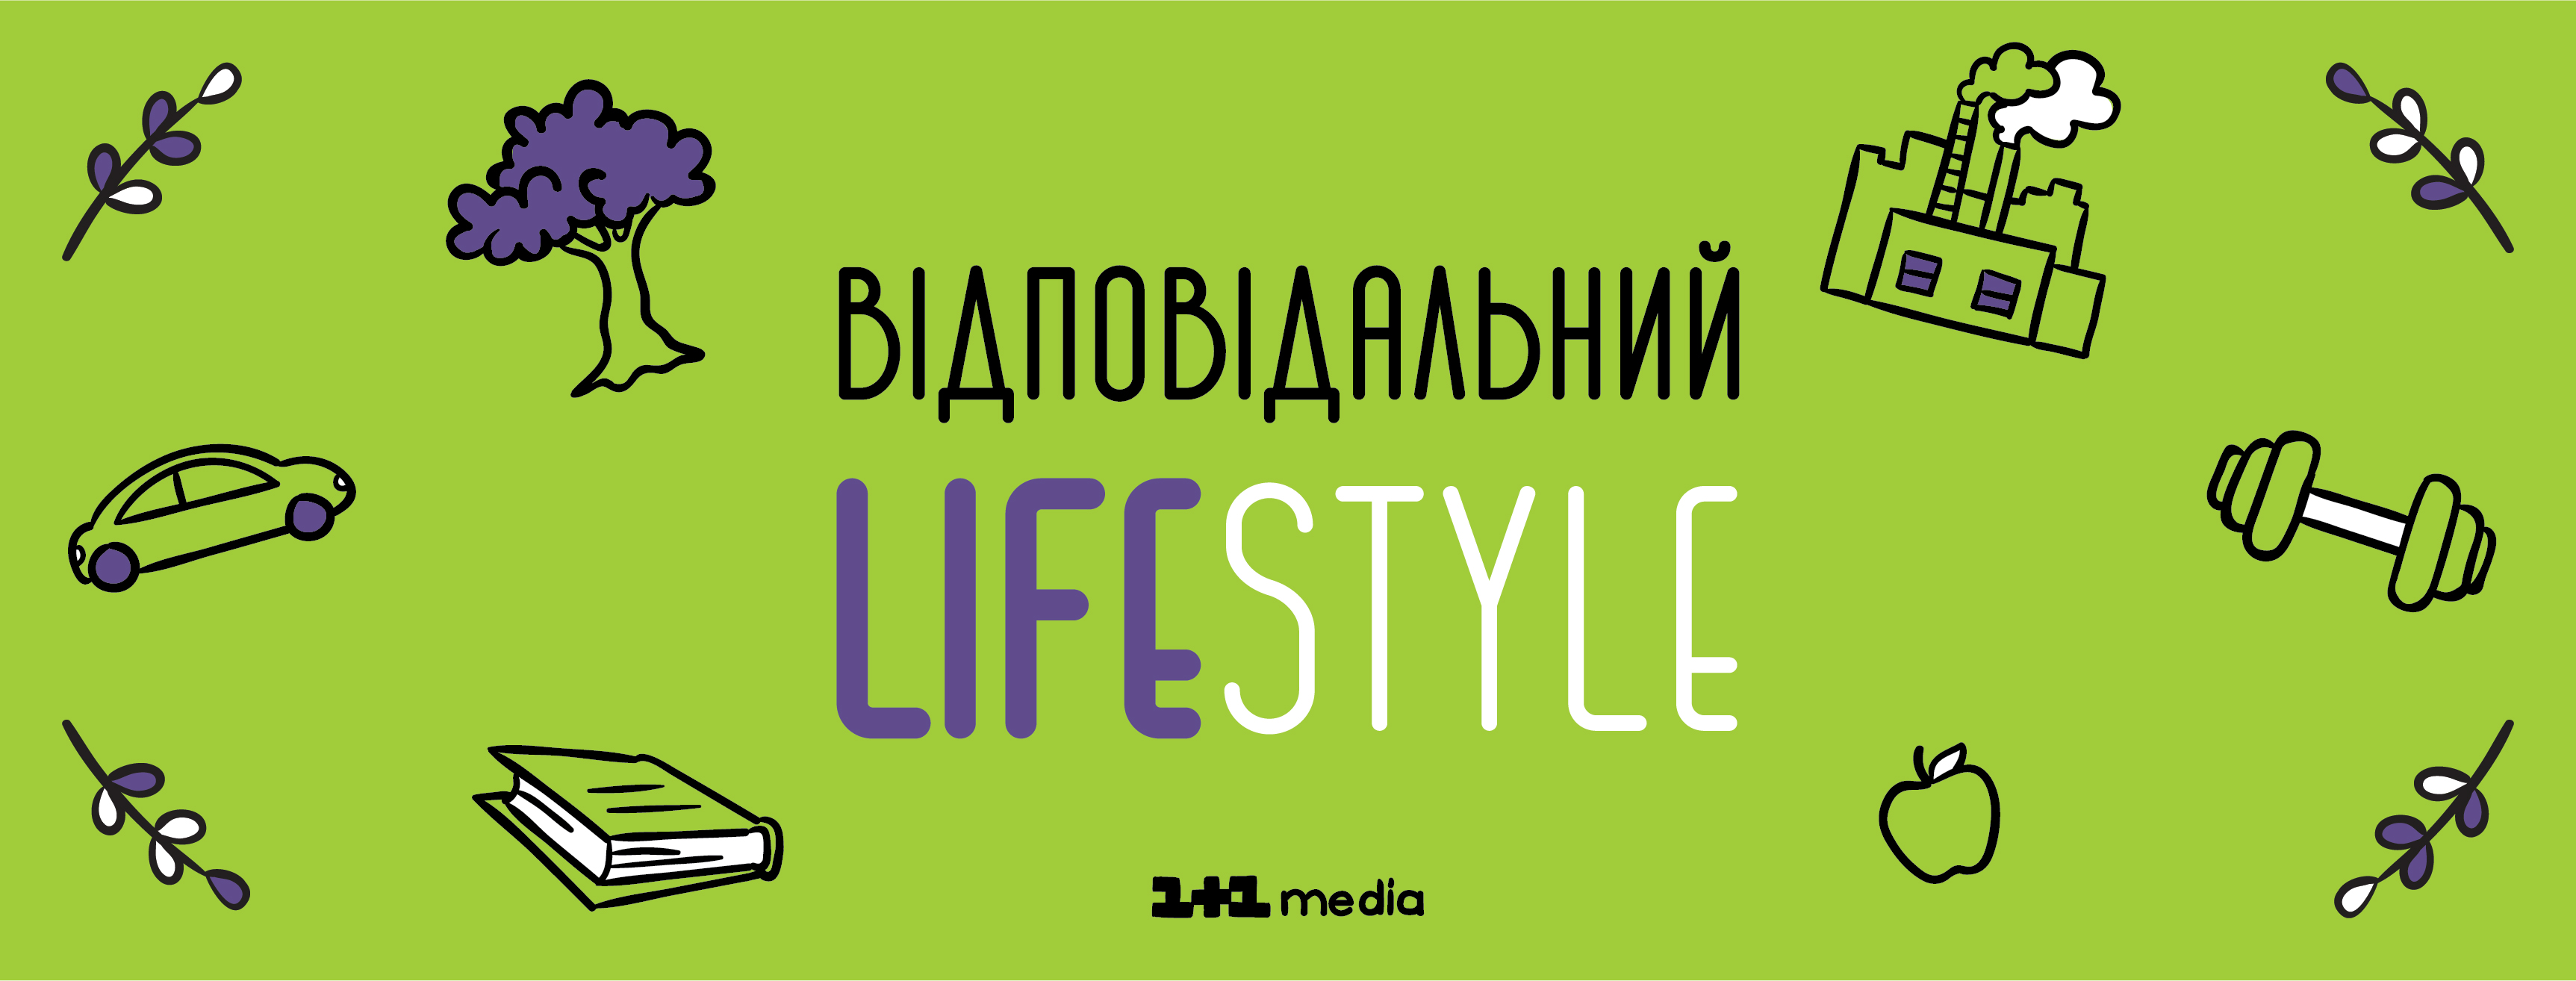 «1+1 медіа» запустила освітній проект «Відповідальний lifestyle», що популяризує свідомий стиль життя серед українців